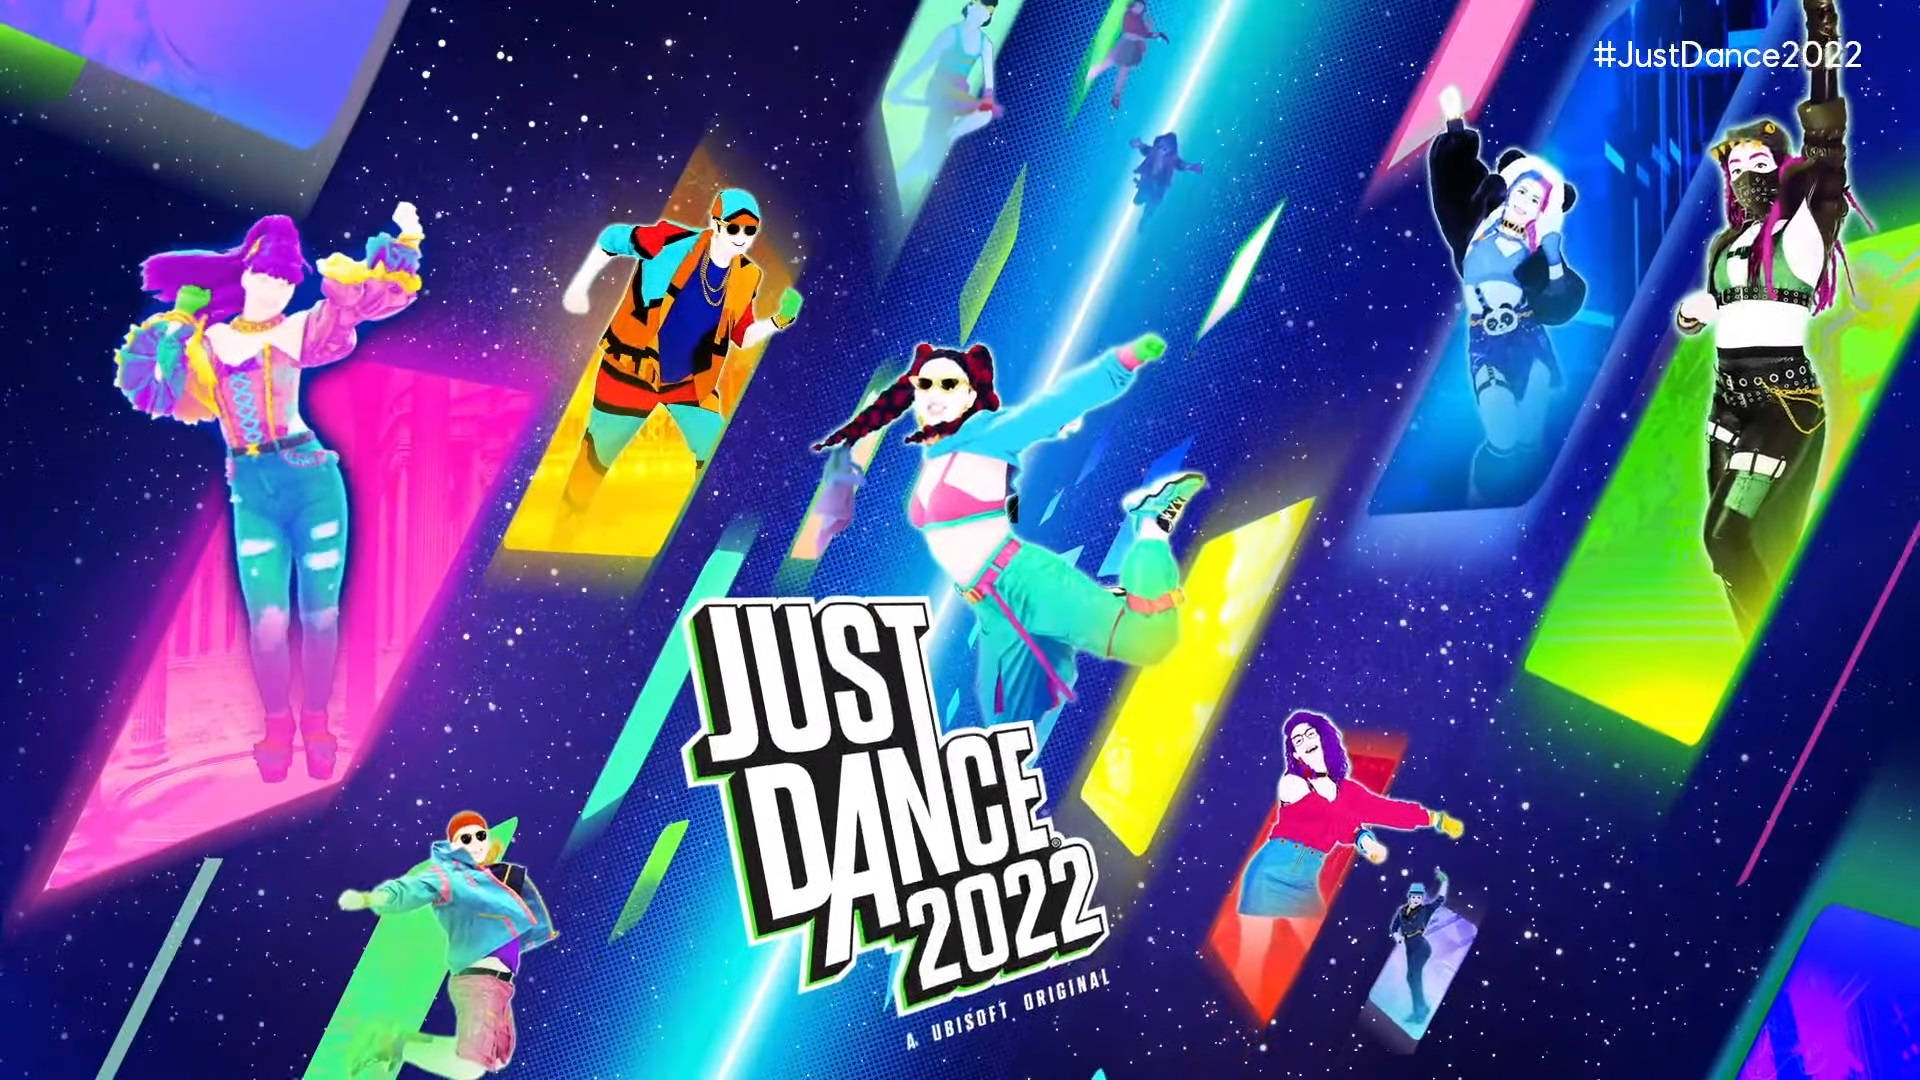 Bailarinesde Just Dance 2022 Saliendo De Los Cuadros. Fondo de pantalla